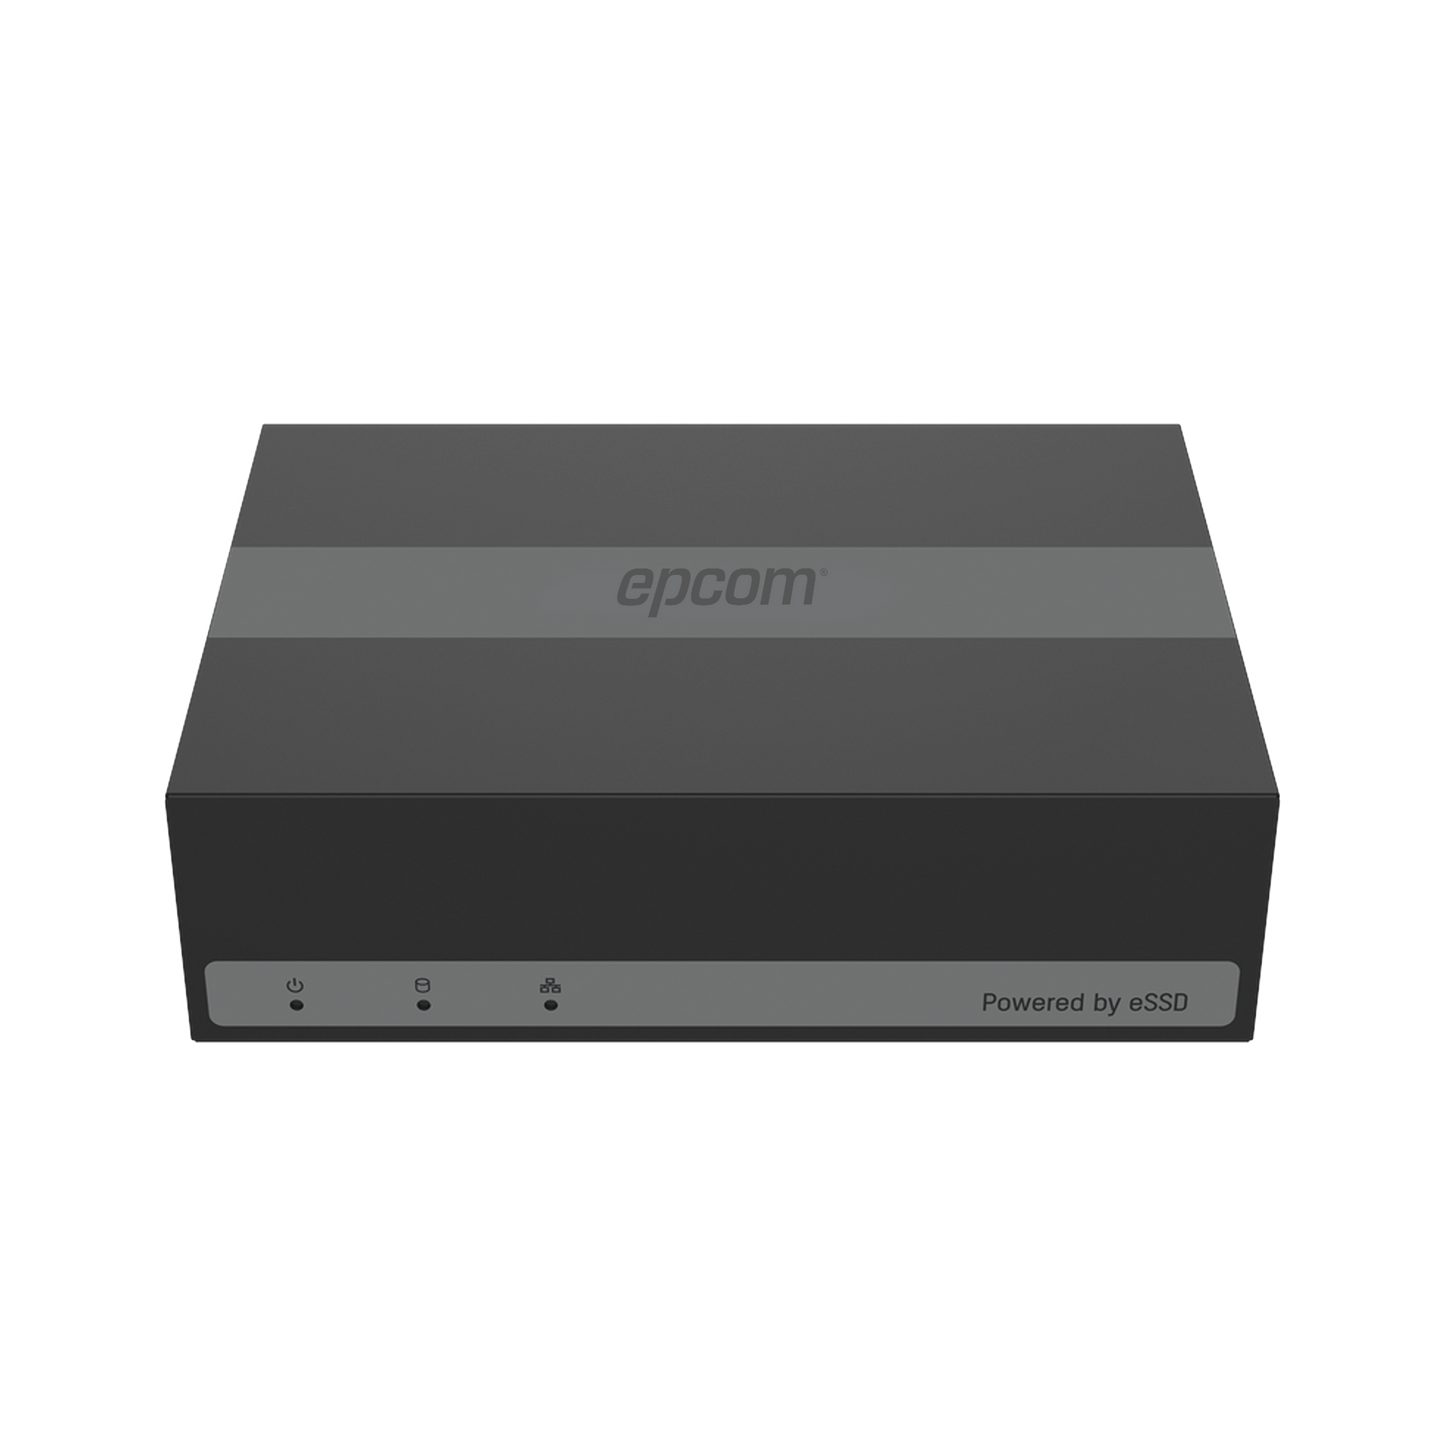 DVR 2 Megapíxel (1080p) Lite / 4 Canales TurboHD + 1 Canal IP / 15 Días de Grabación / Unidad de Estado Solido Incluido / H.265+ / Acusense Lite (Evita Falsas Alarmas) / Diseño Ultra Compacto / Extra Silencioso / eSSD de 300 GB